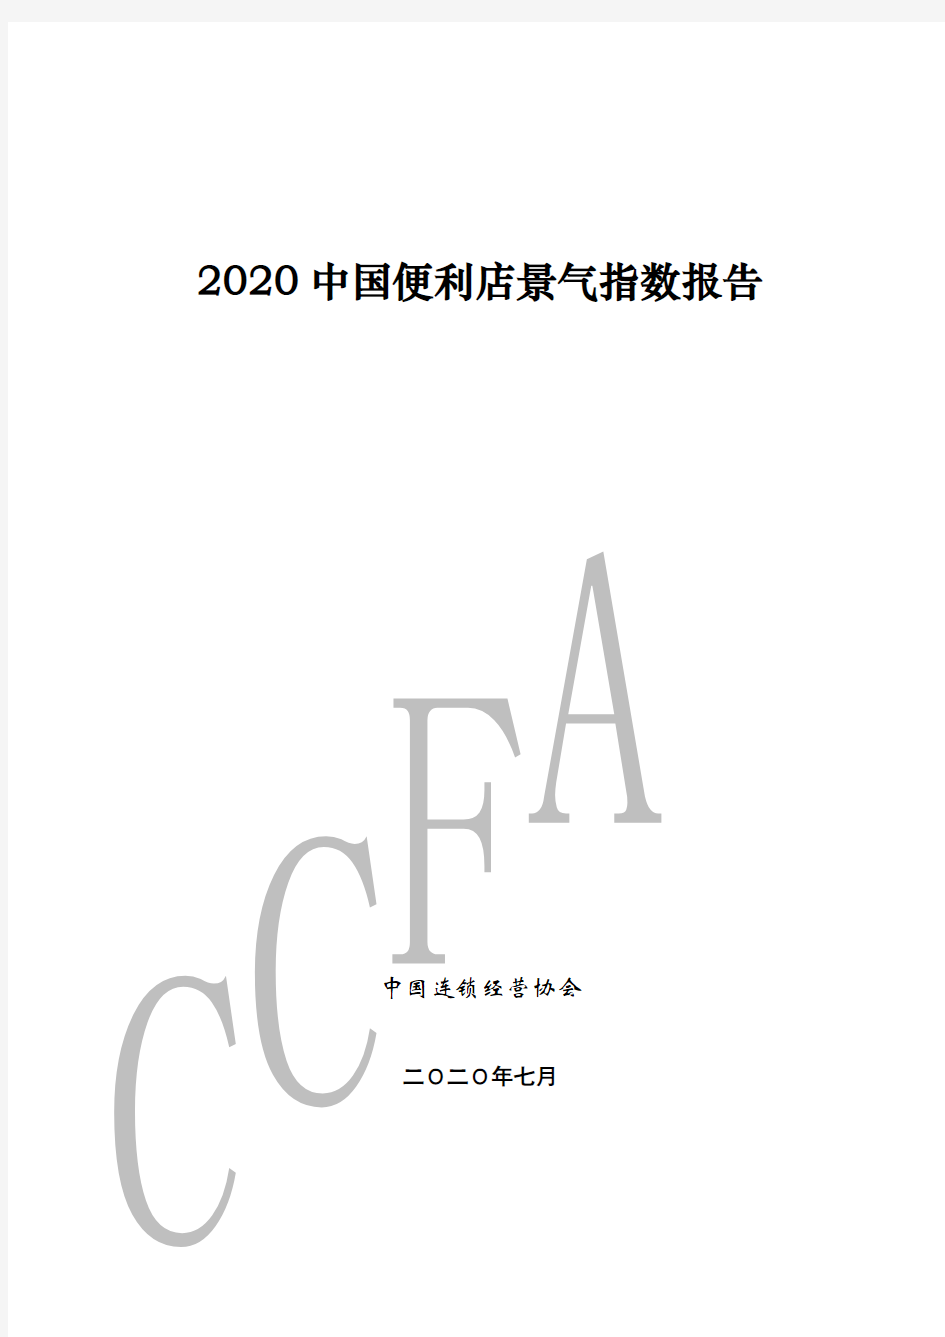 2020中国便利店景气指数报告-中国连锁经营协会-202007(1)